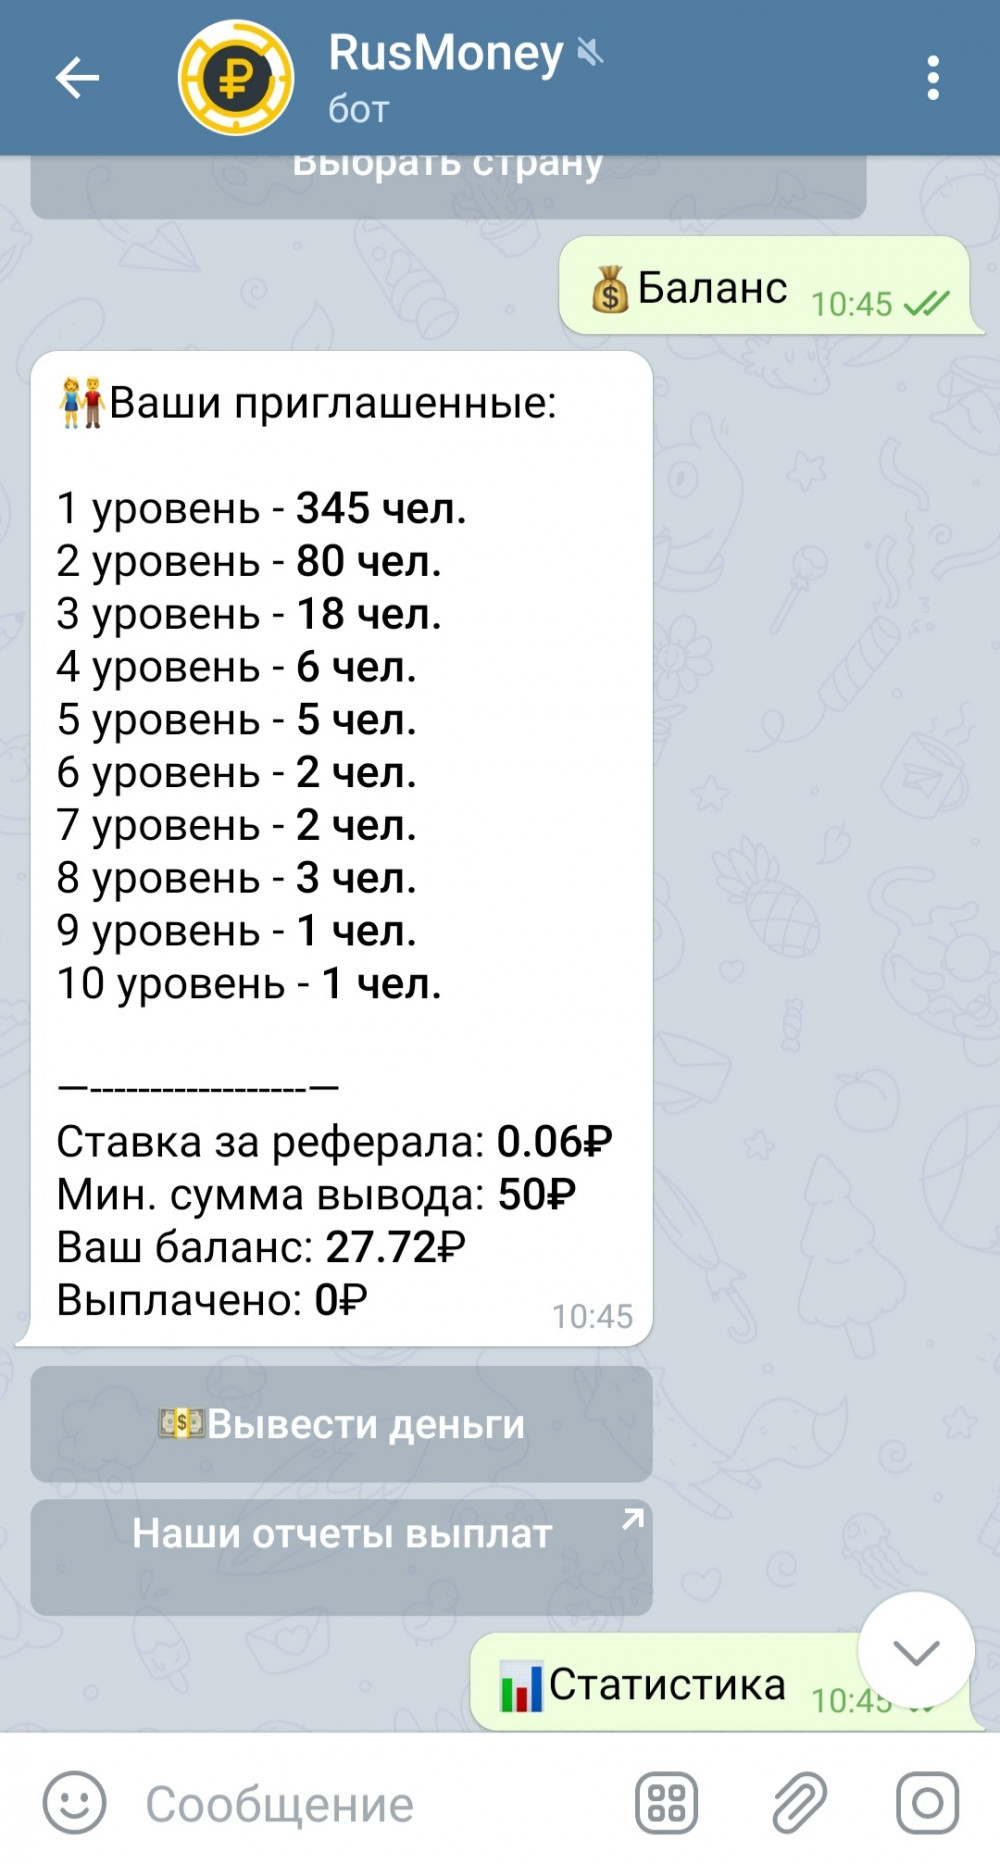 Заработок в телеграмме без вложений с выводом денег на карту сбербанка на русском фото 106